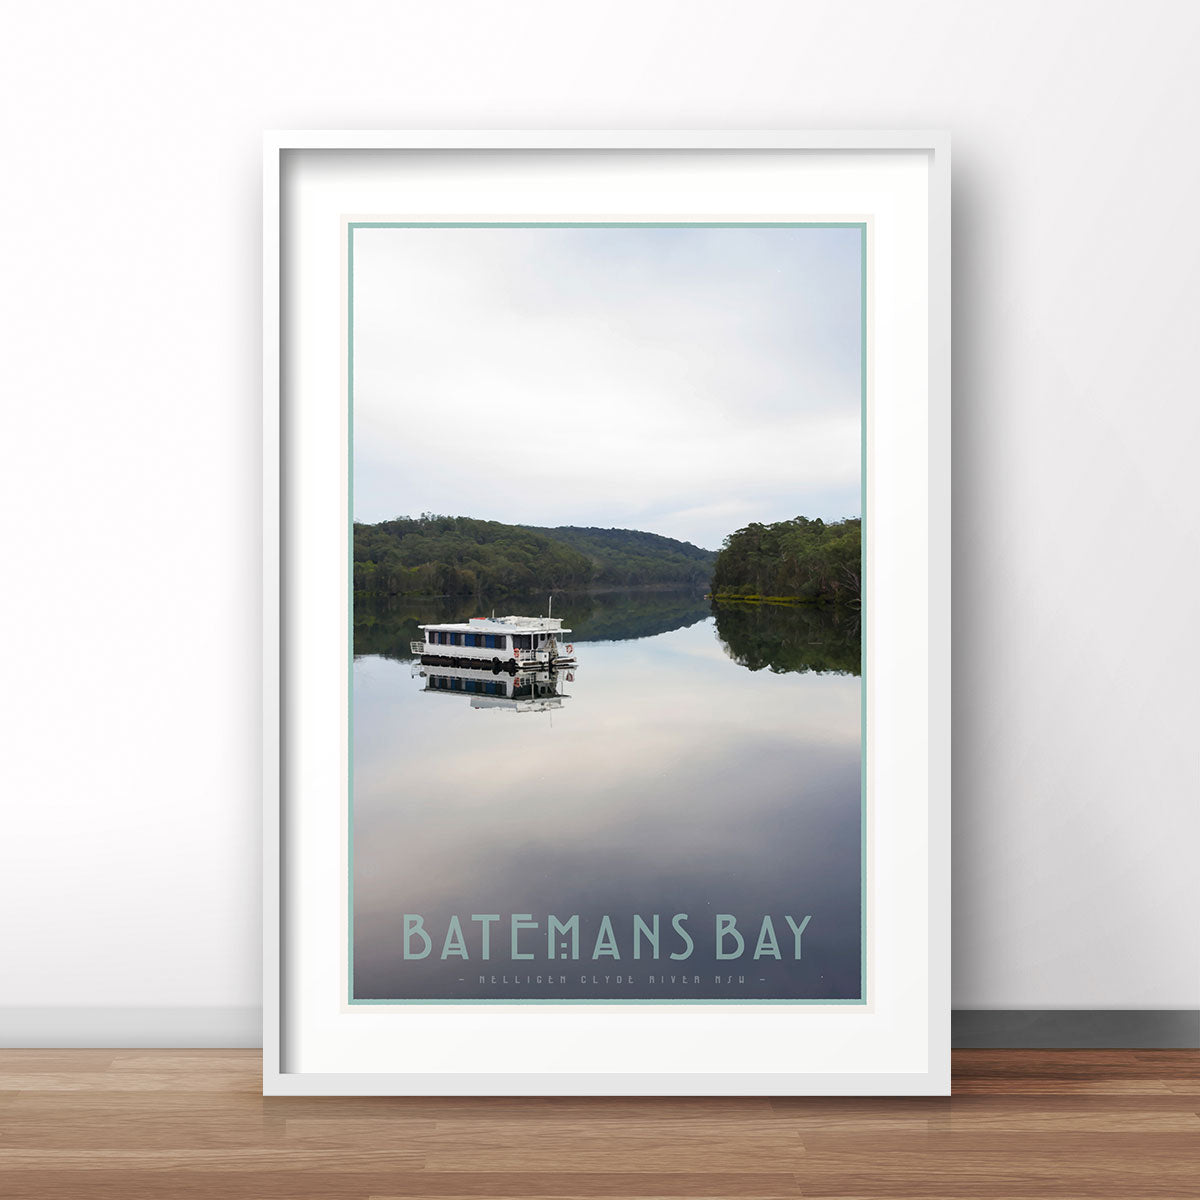 Batemans bay NSW vintage travel print by places we luv